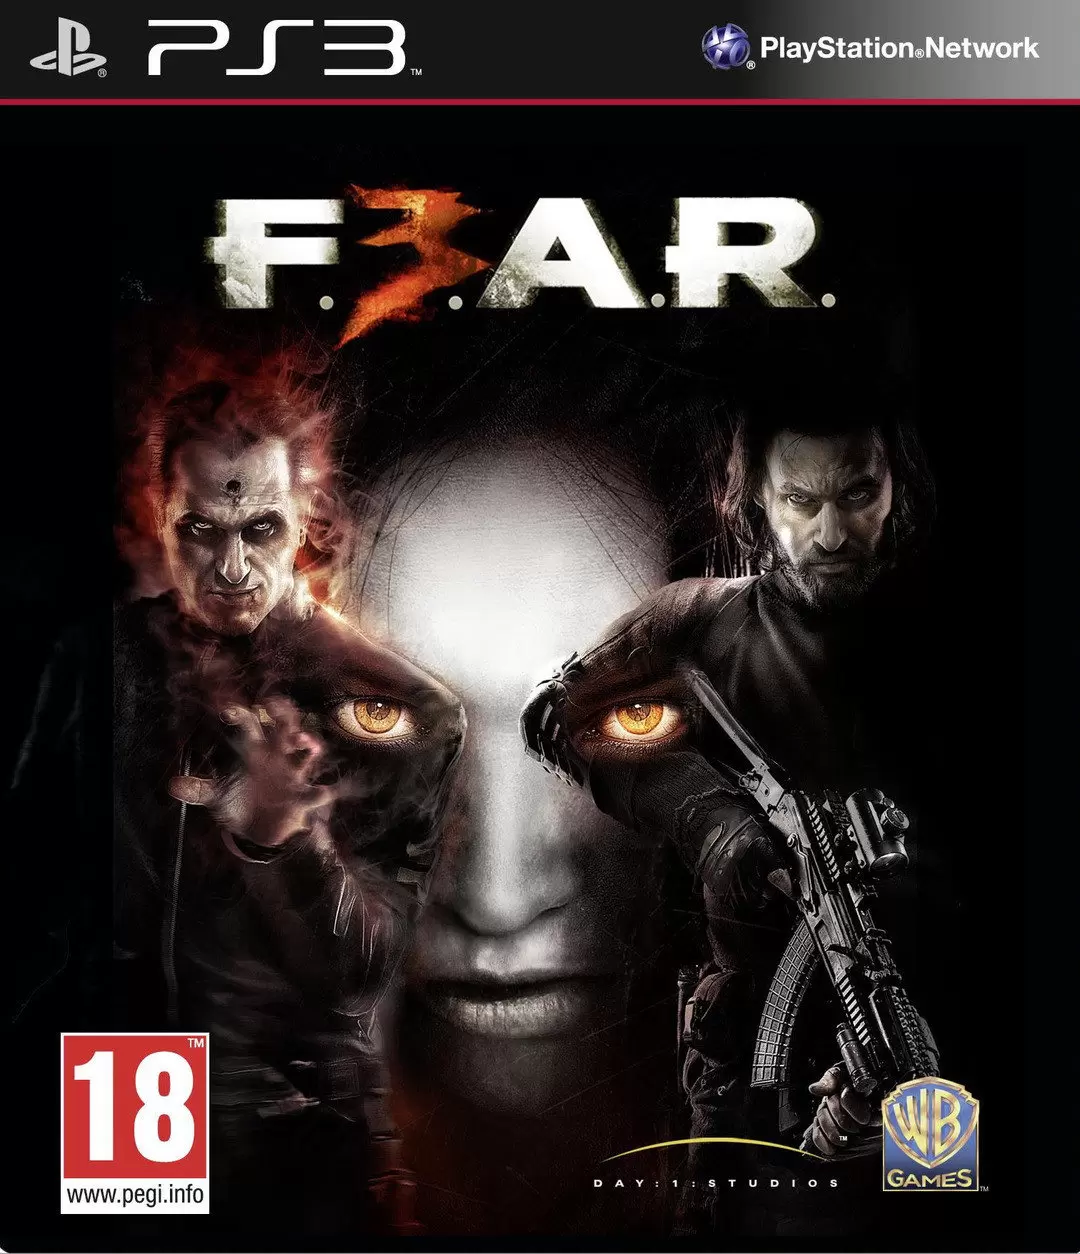 PS3 Games - F.E.A.R. 3